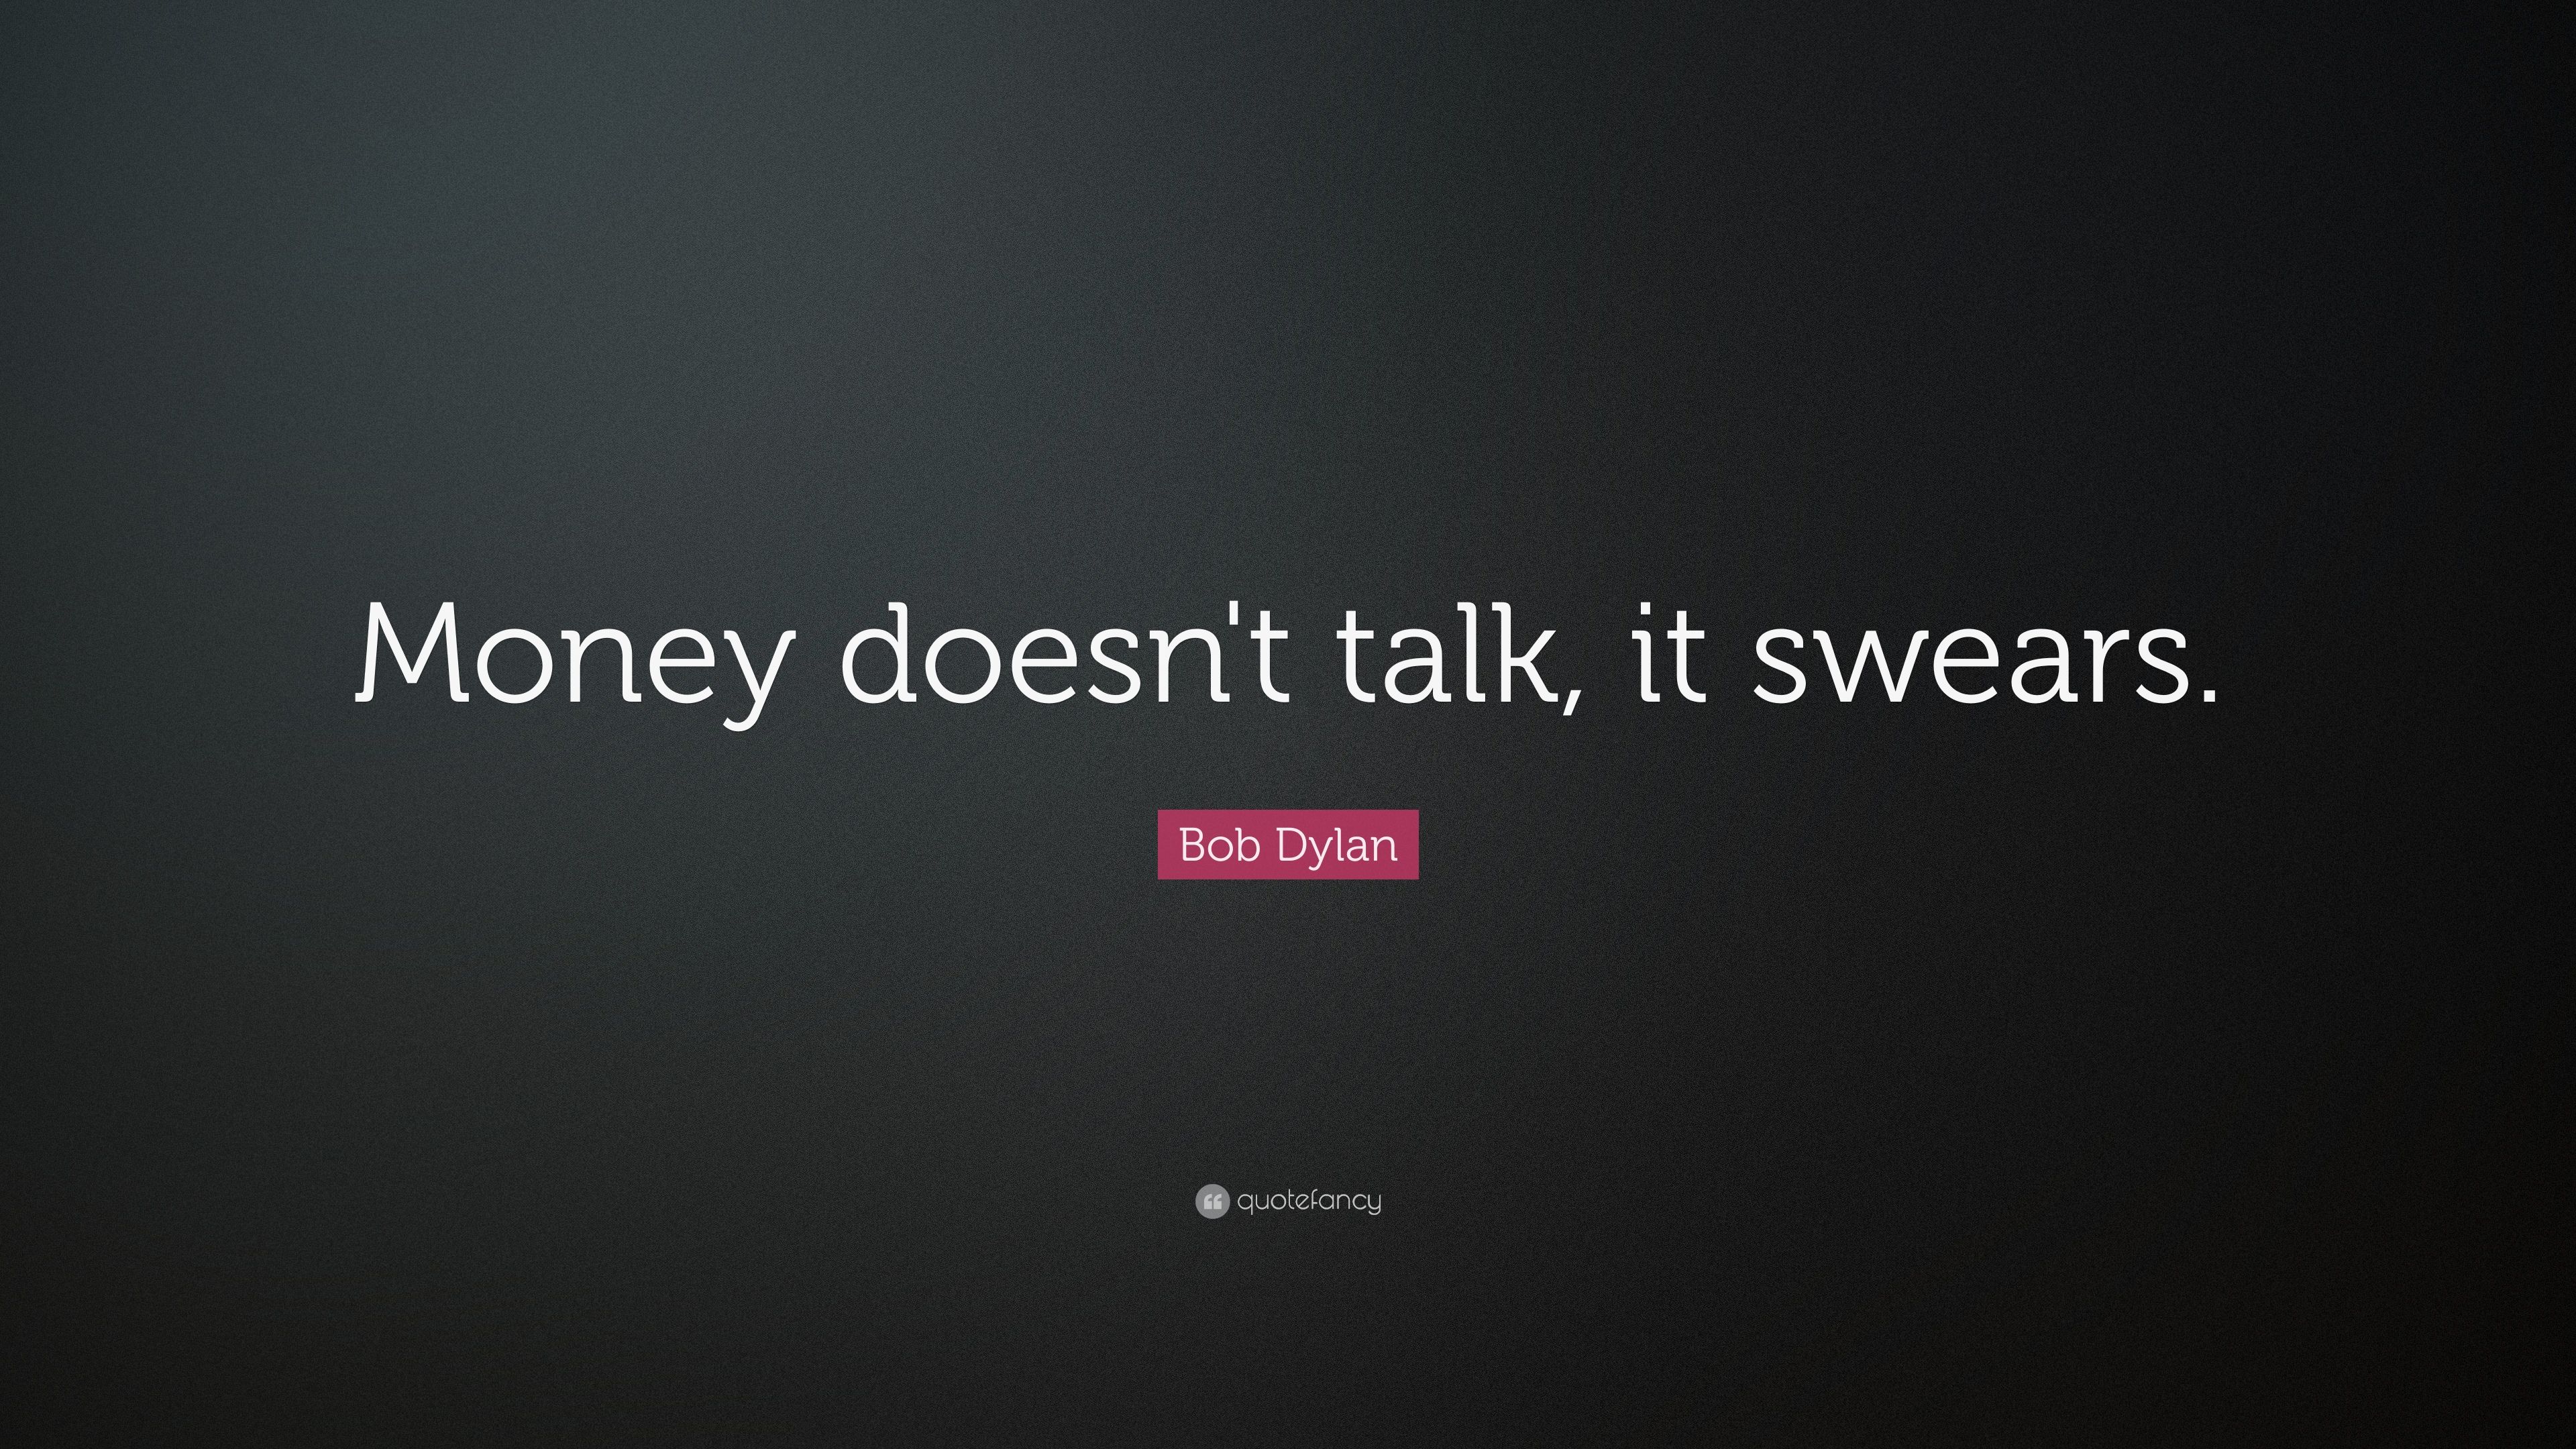 Bob Dylan Quote: “Money doesn't talk, it swears.” 13 wallpaper